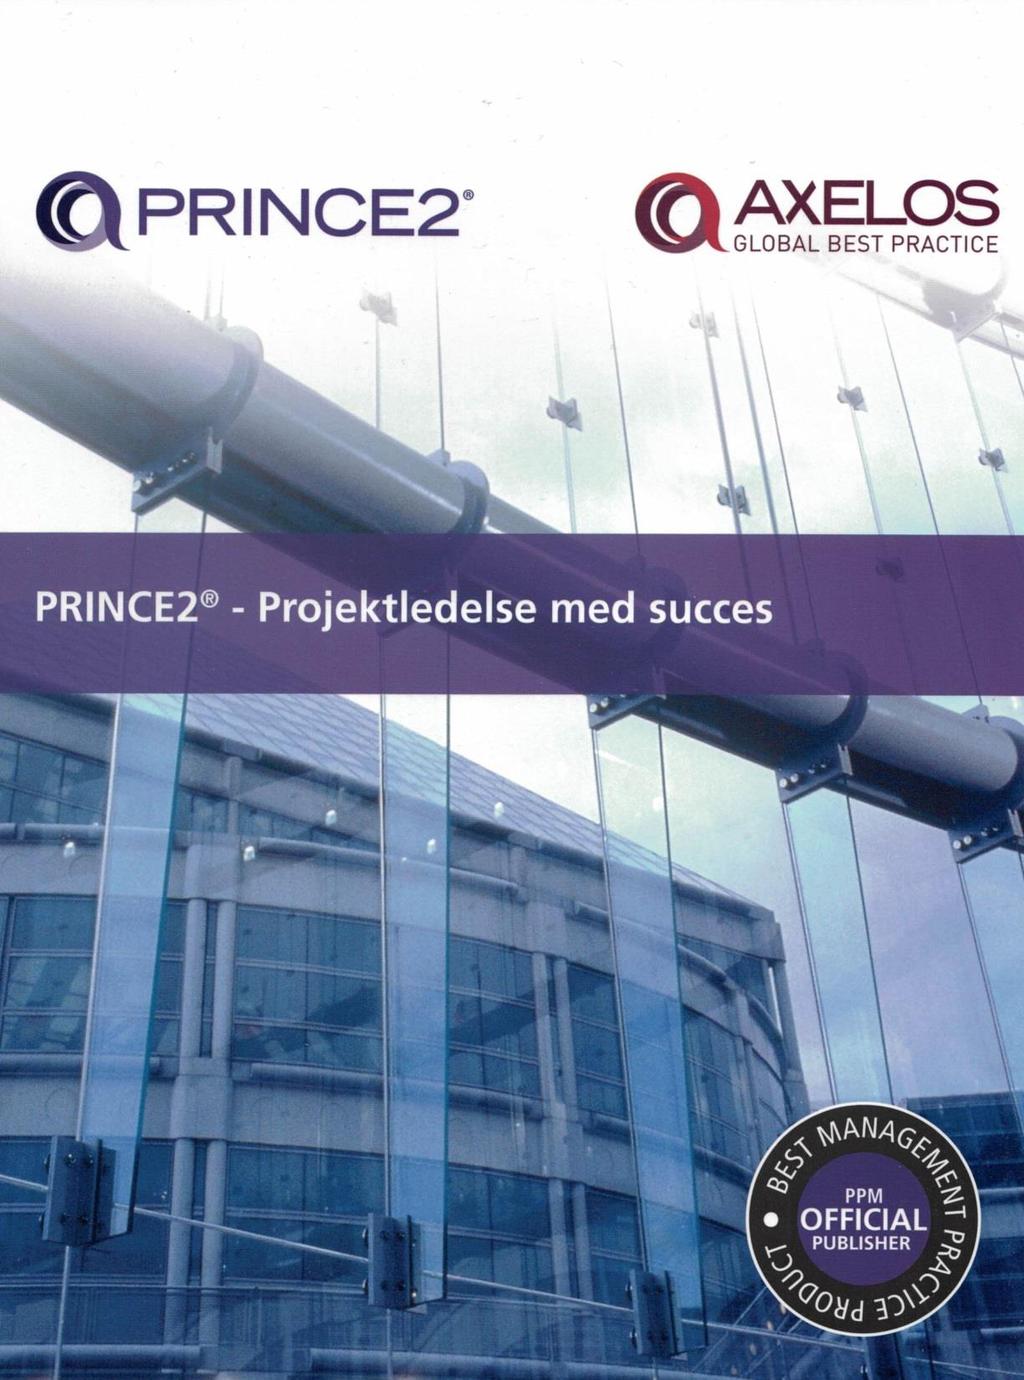 Den officielle danske udgave af PRINCE2 grundbogen. Den indgår i prisen for alle vores PRINCE2 Foundation-kurser.